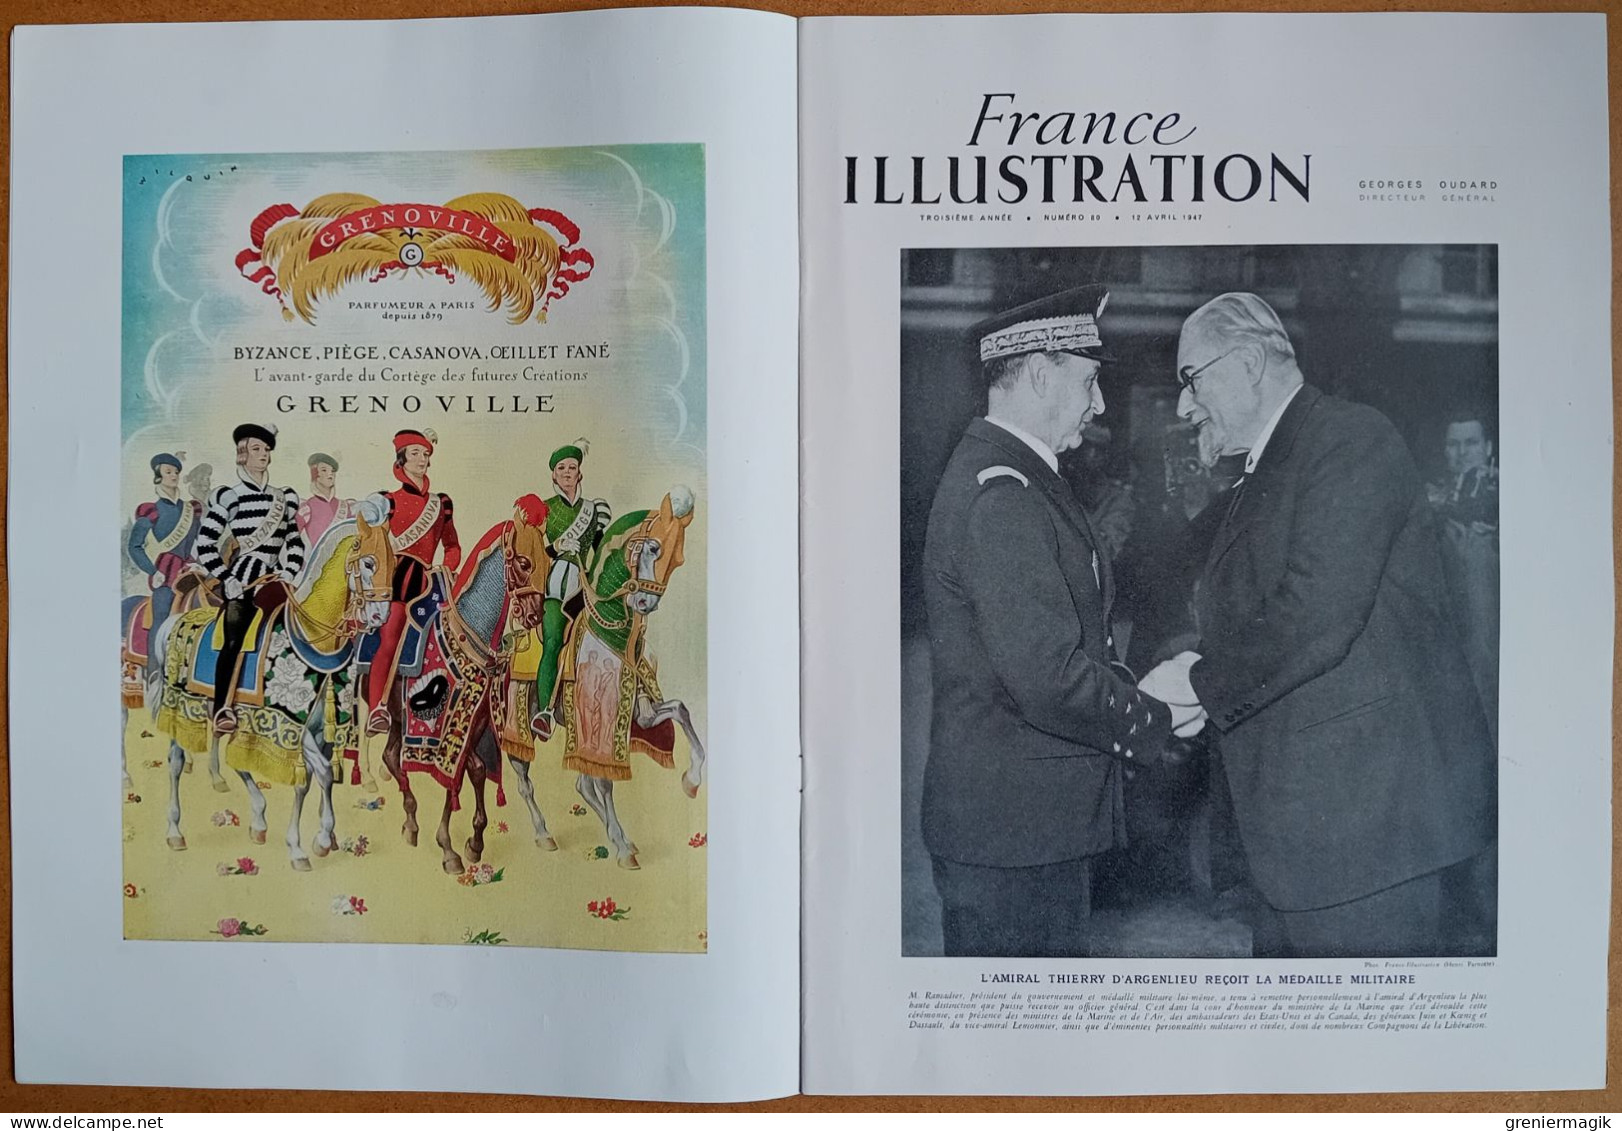 France Illustration N°80 12/04/1947 Attentat Haïfa/Guerre Clandestine Les Réseaux Français/Walter Audisio/Espagne/Grèce - Algemene Informatie